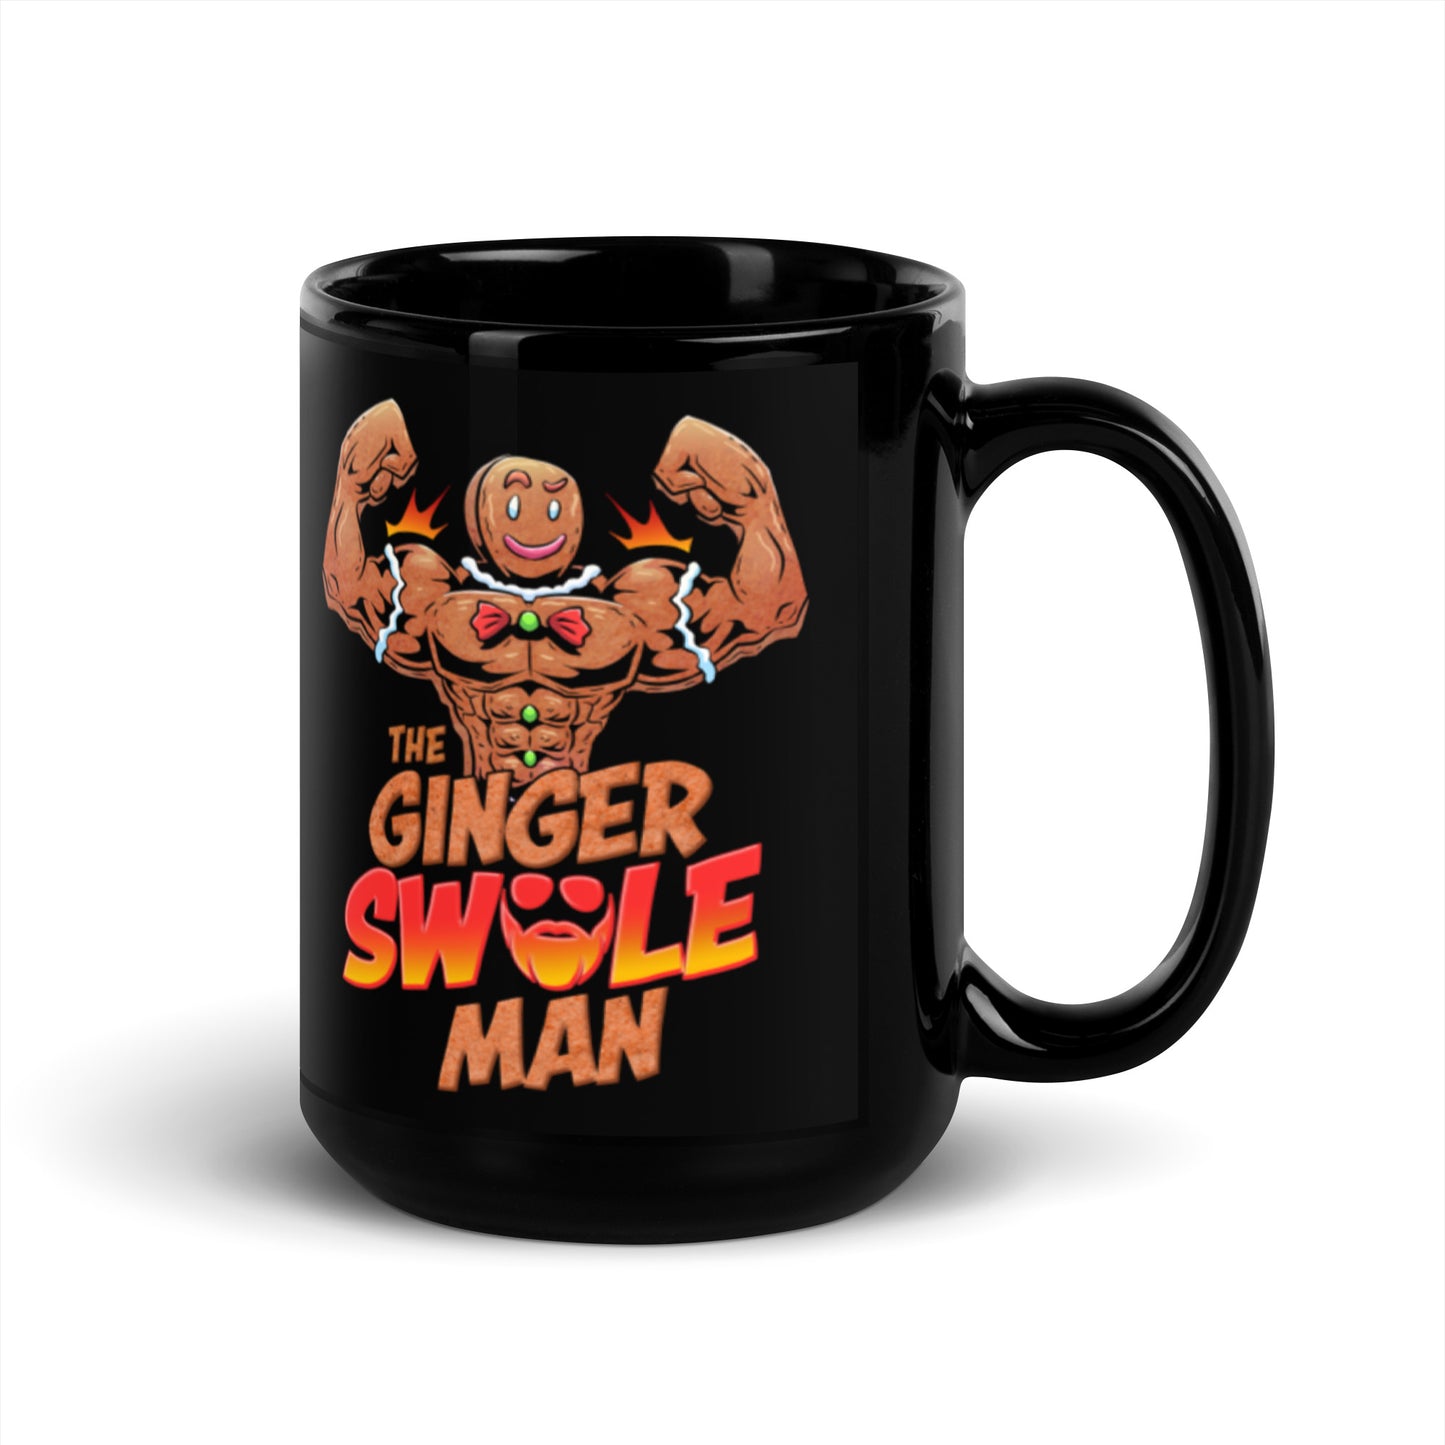 The Ginger Swole Man Mug